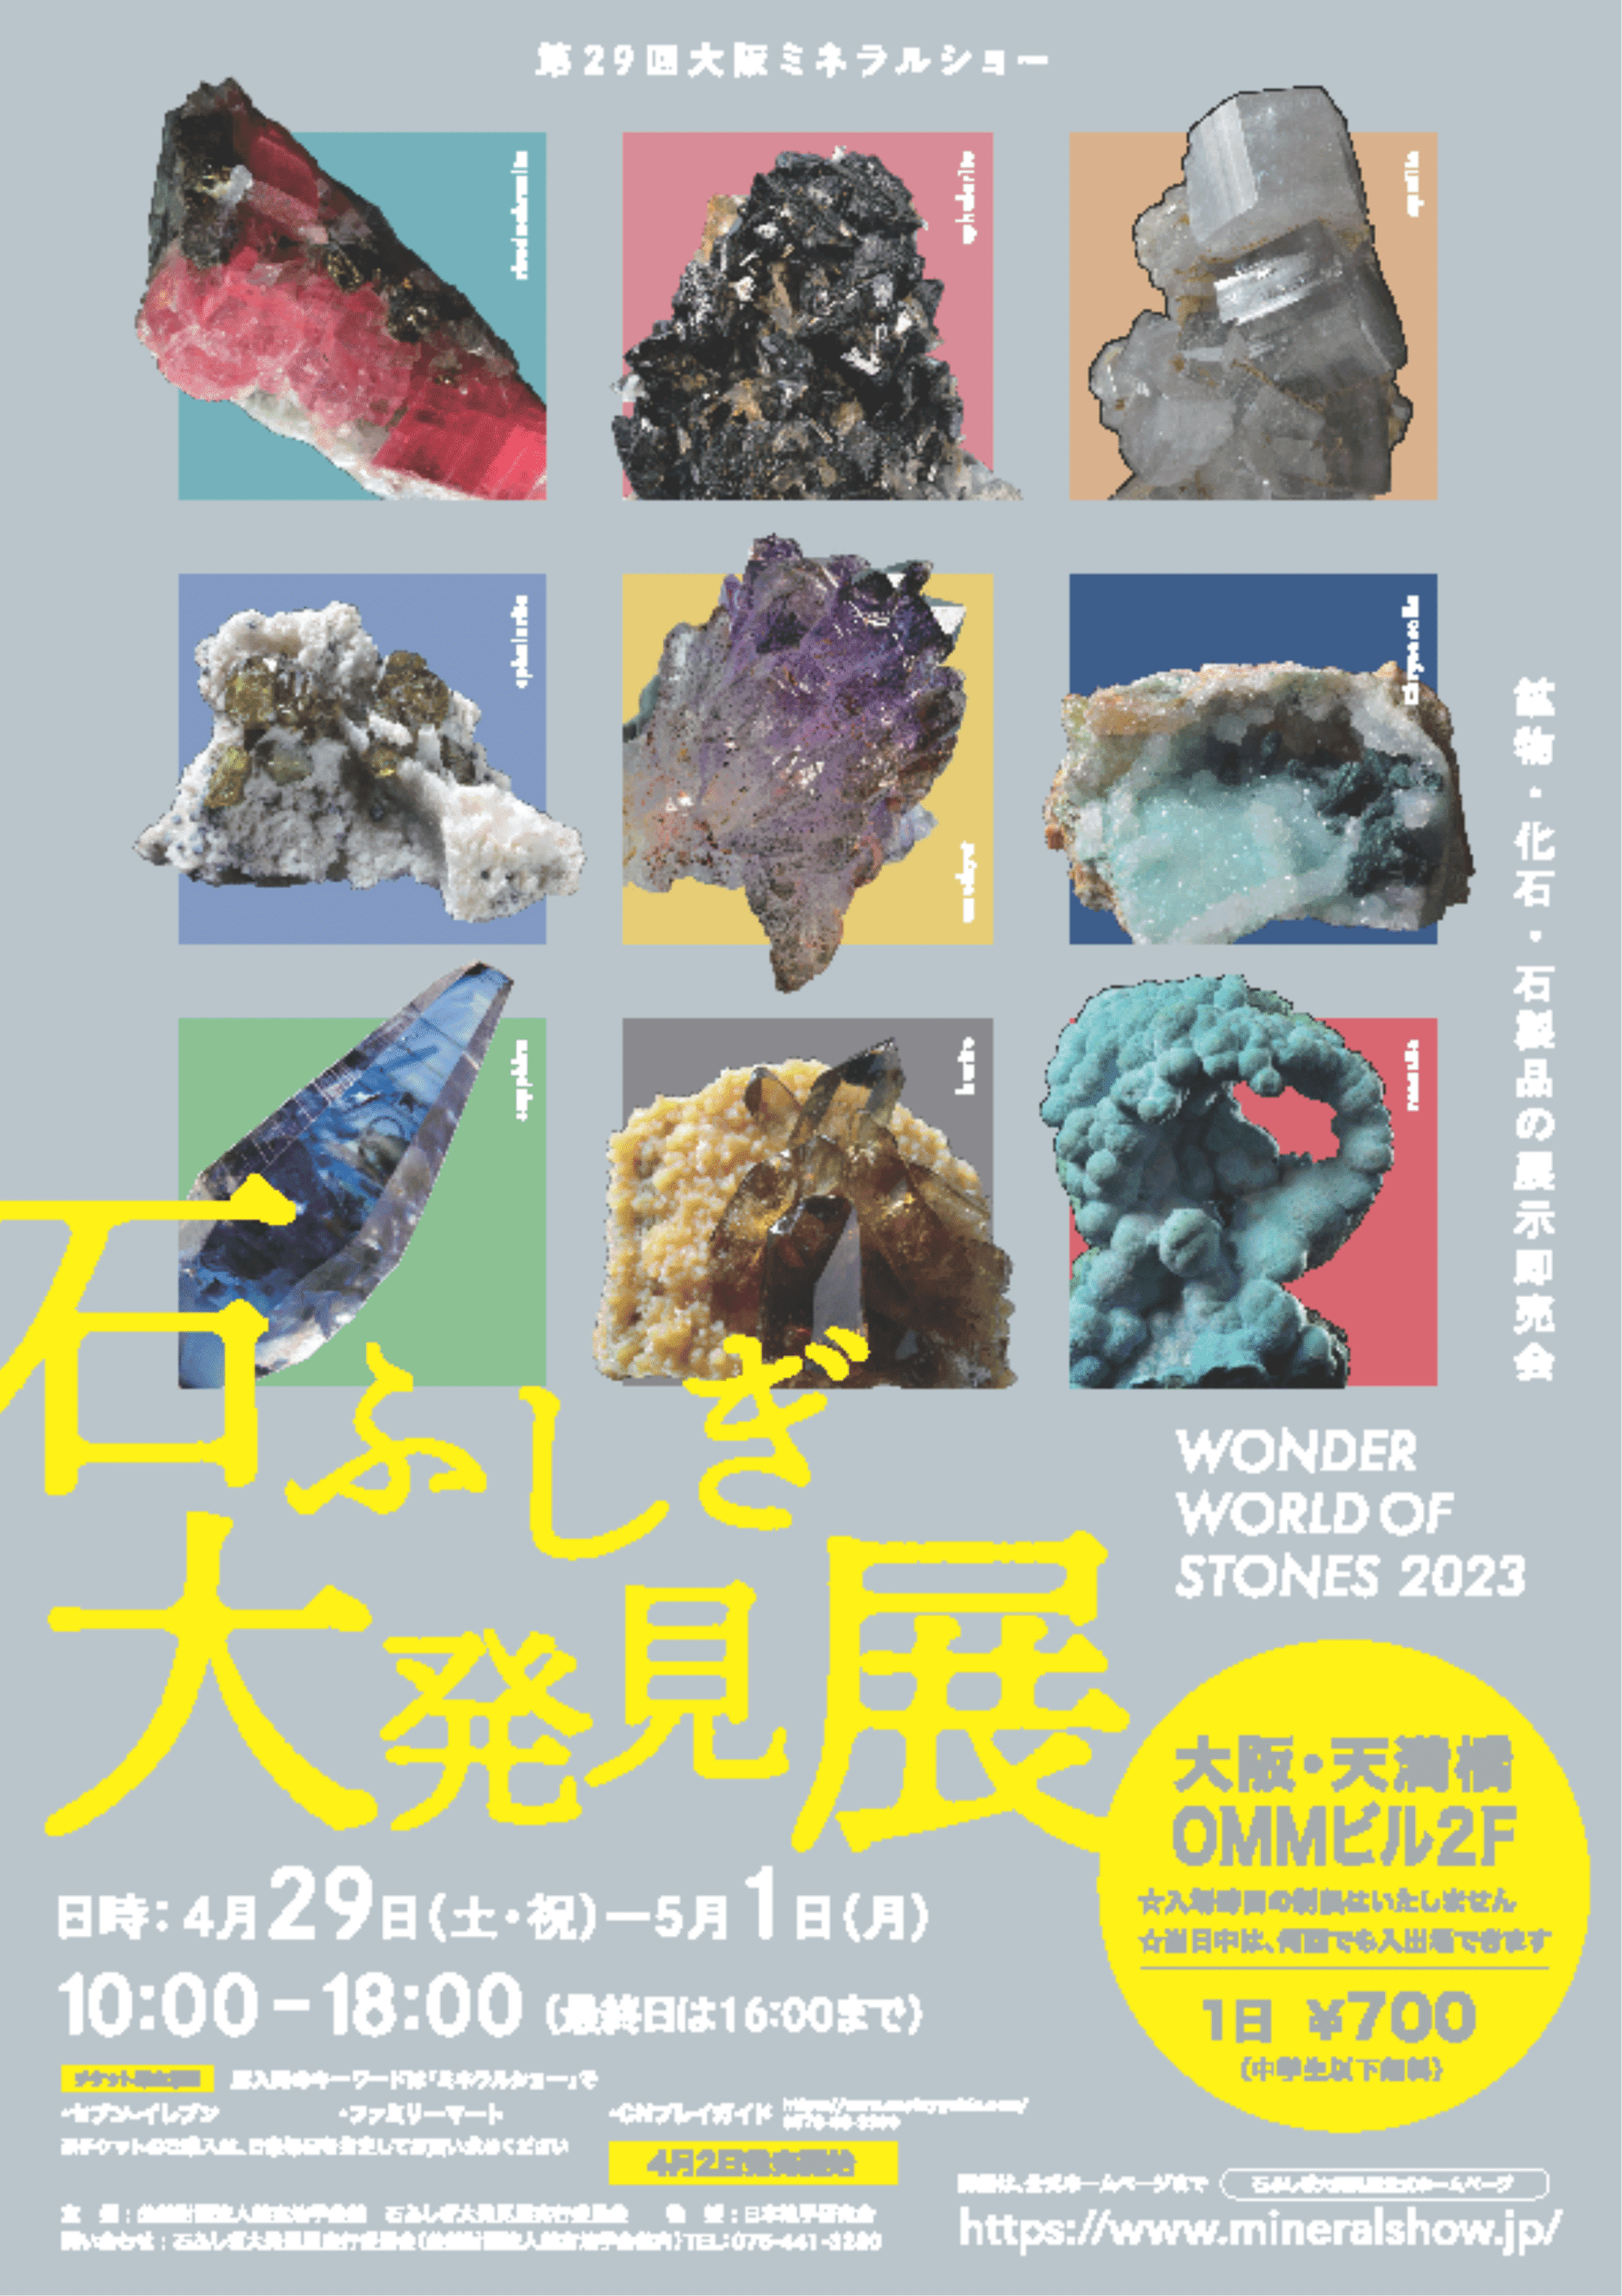 4/12発送分より石ふしぎ大発見展 2023（大阪ミネラルショー）のチラシを同封します